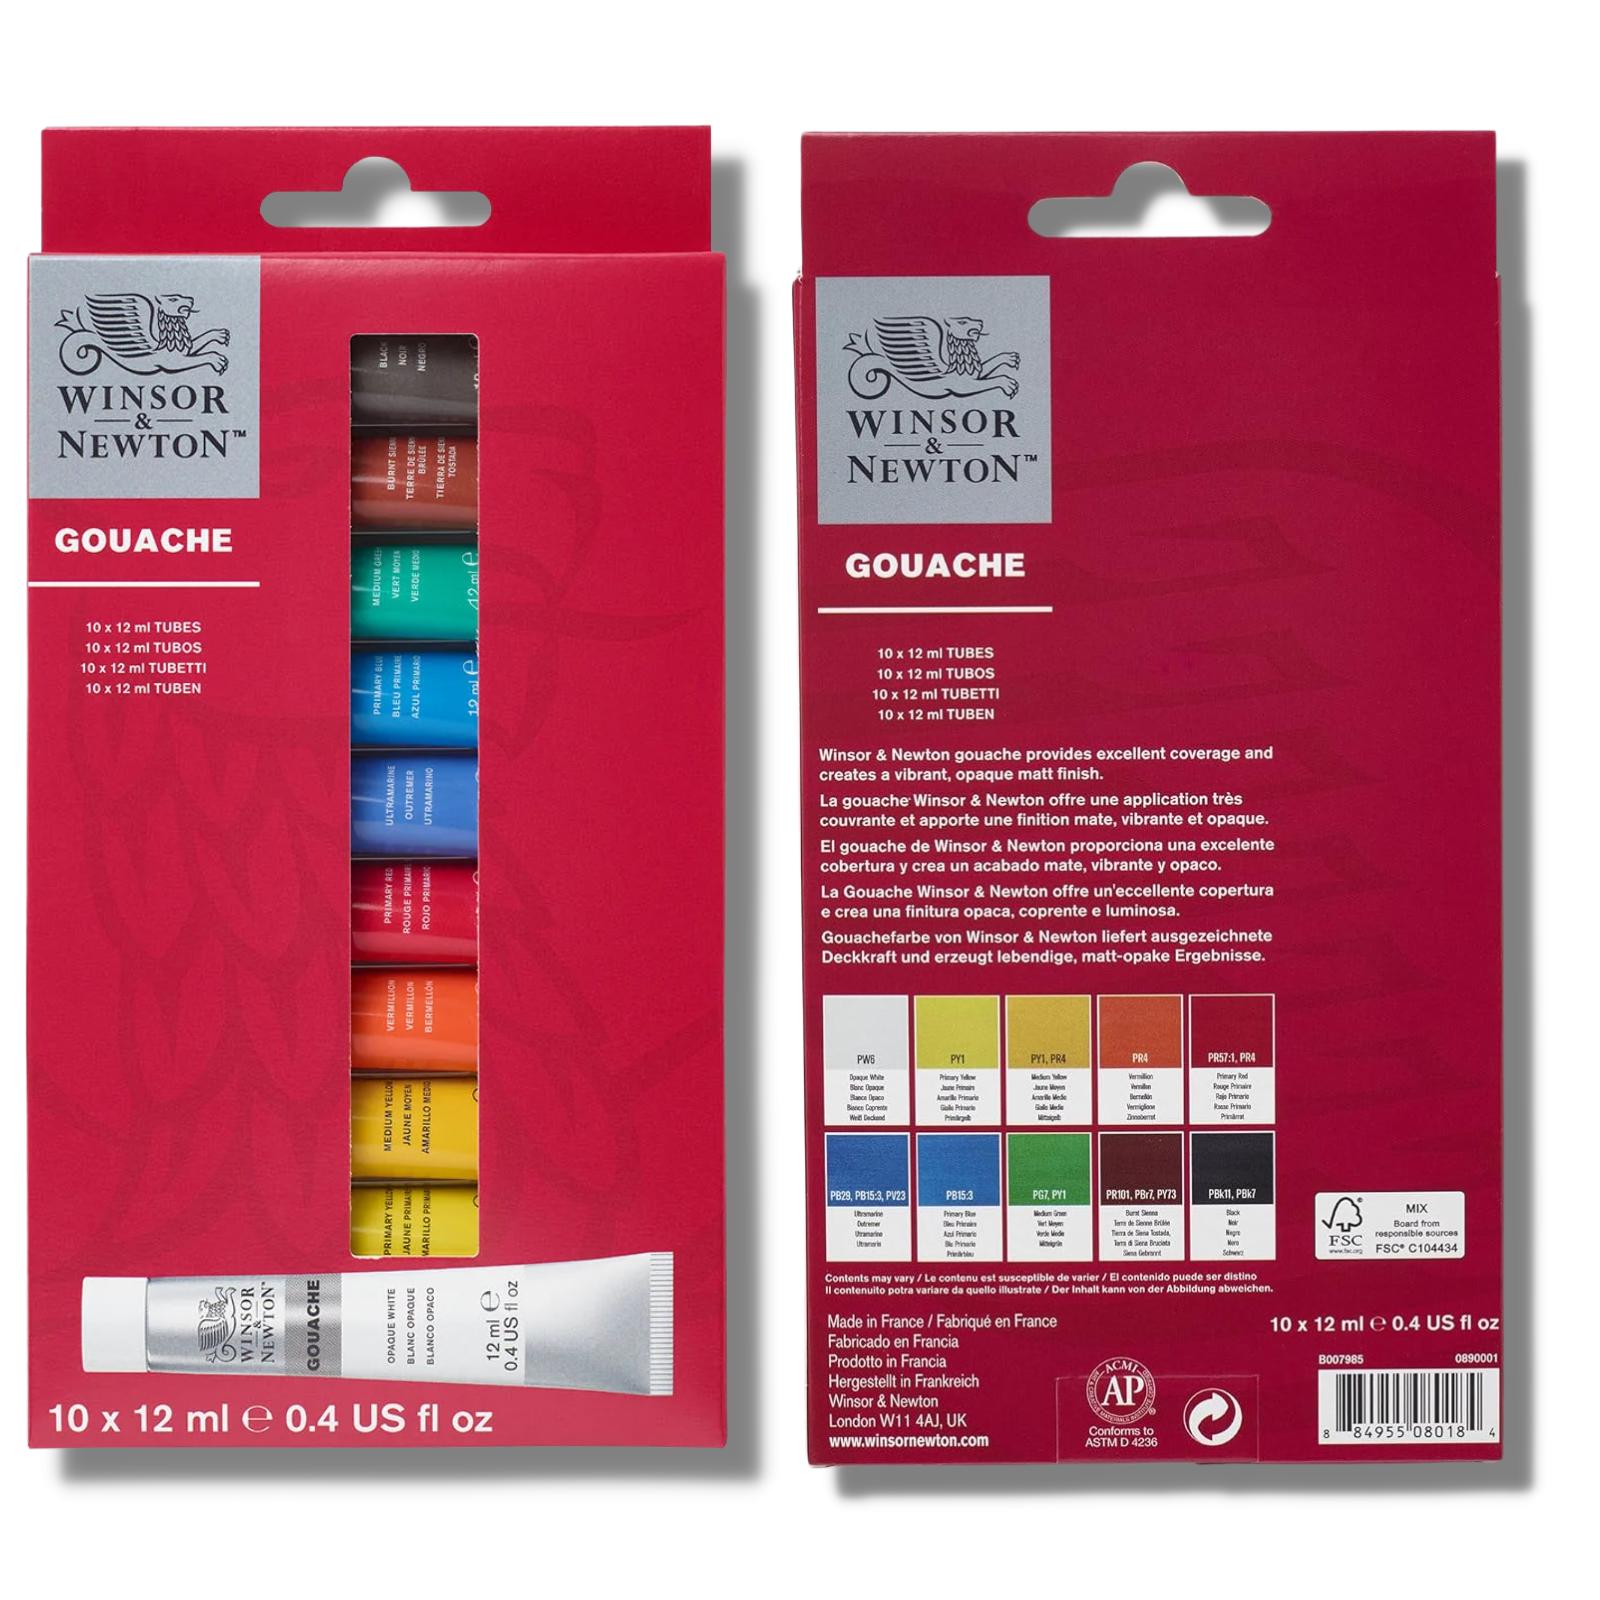 Winsor & Newton Gouache Primary Colour Set, 12ml, 10 Colours - A versatile range of gouache paints